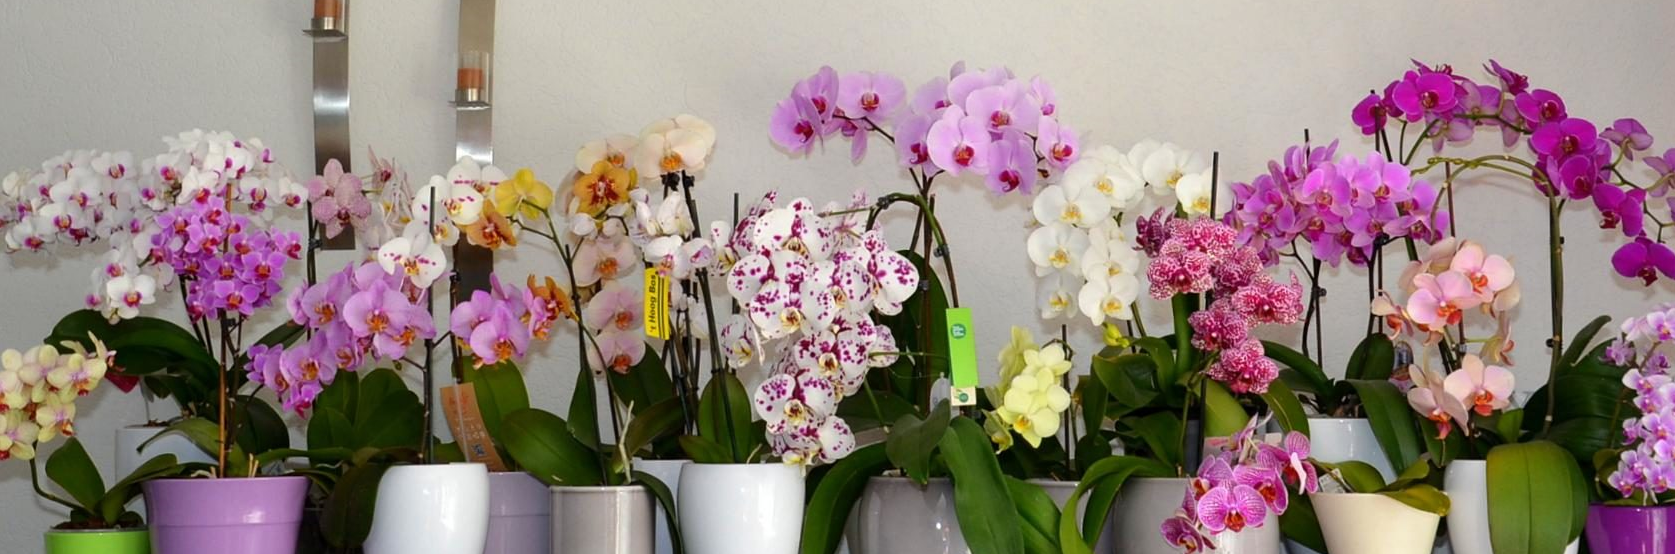 Ванильная орхидея, орхидея ваниль. уход, размножение, выращивание дома. | floplants. о комнатных растениях